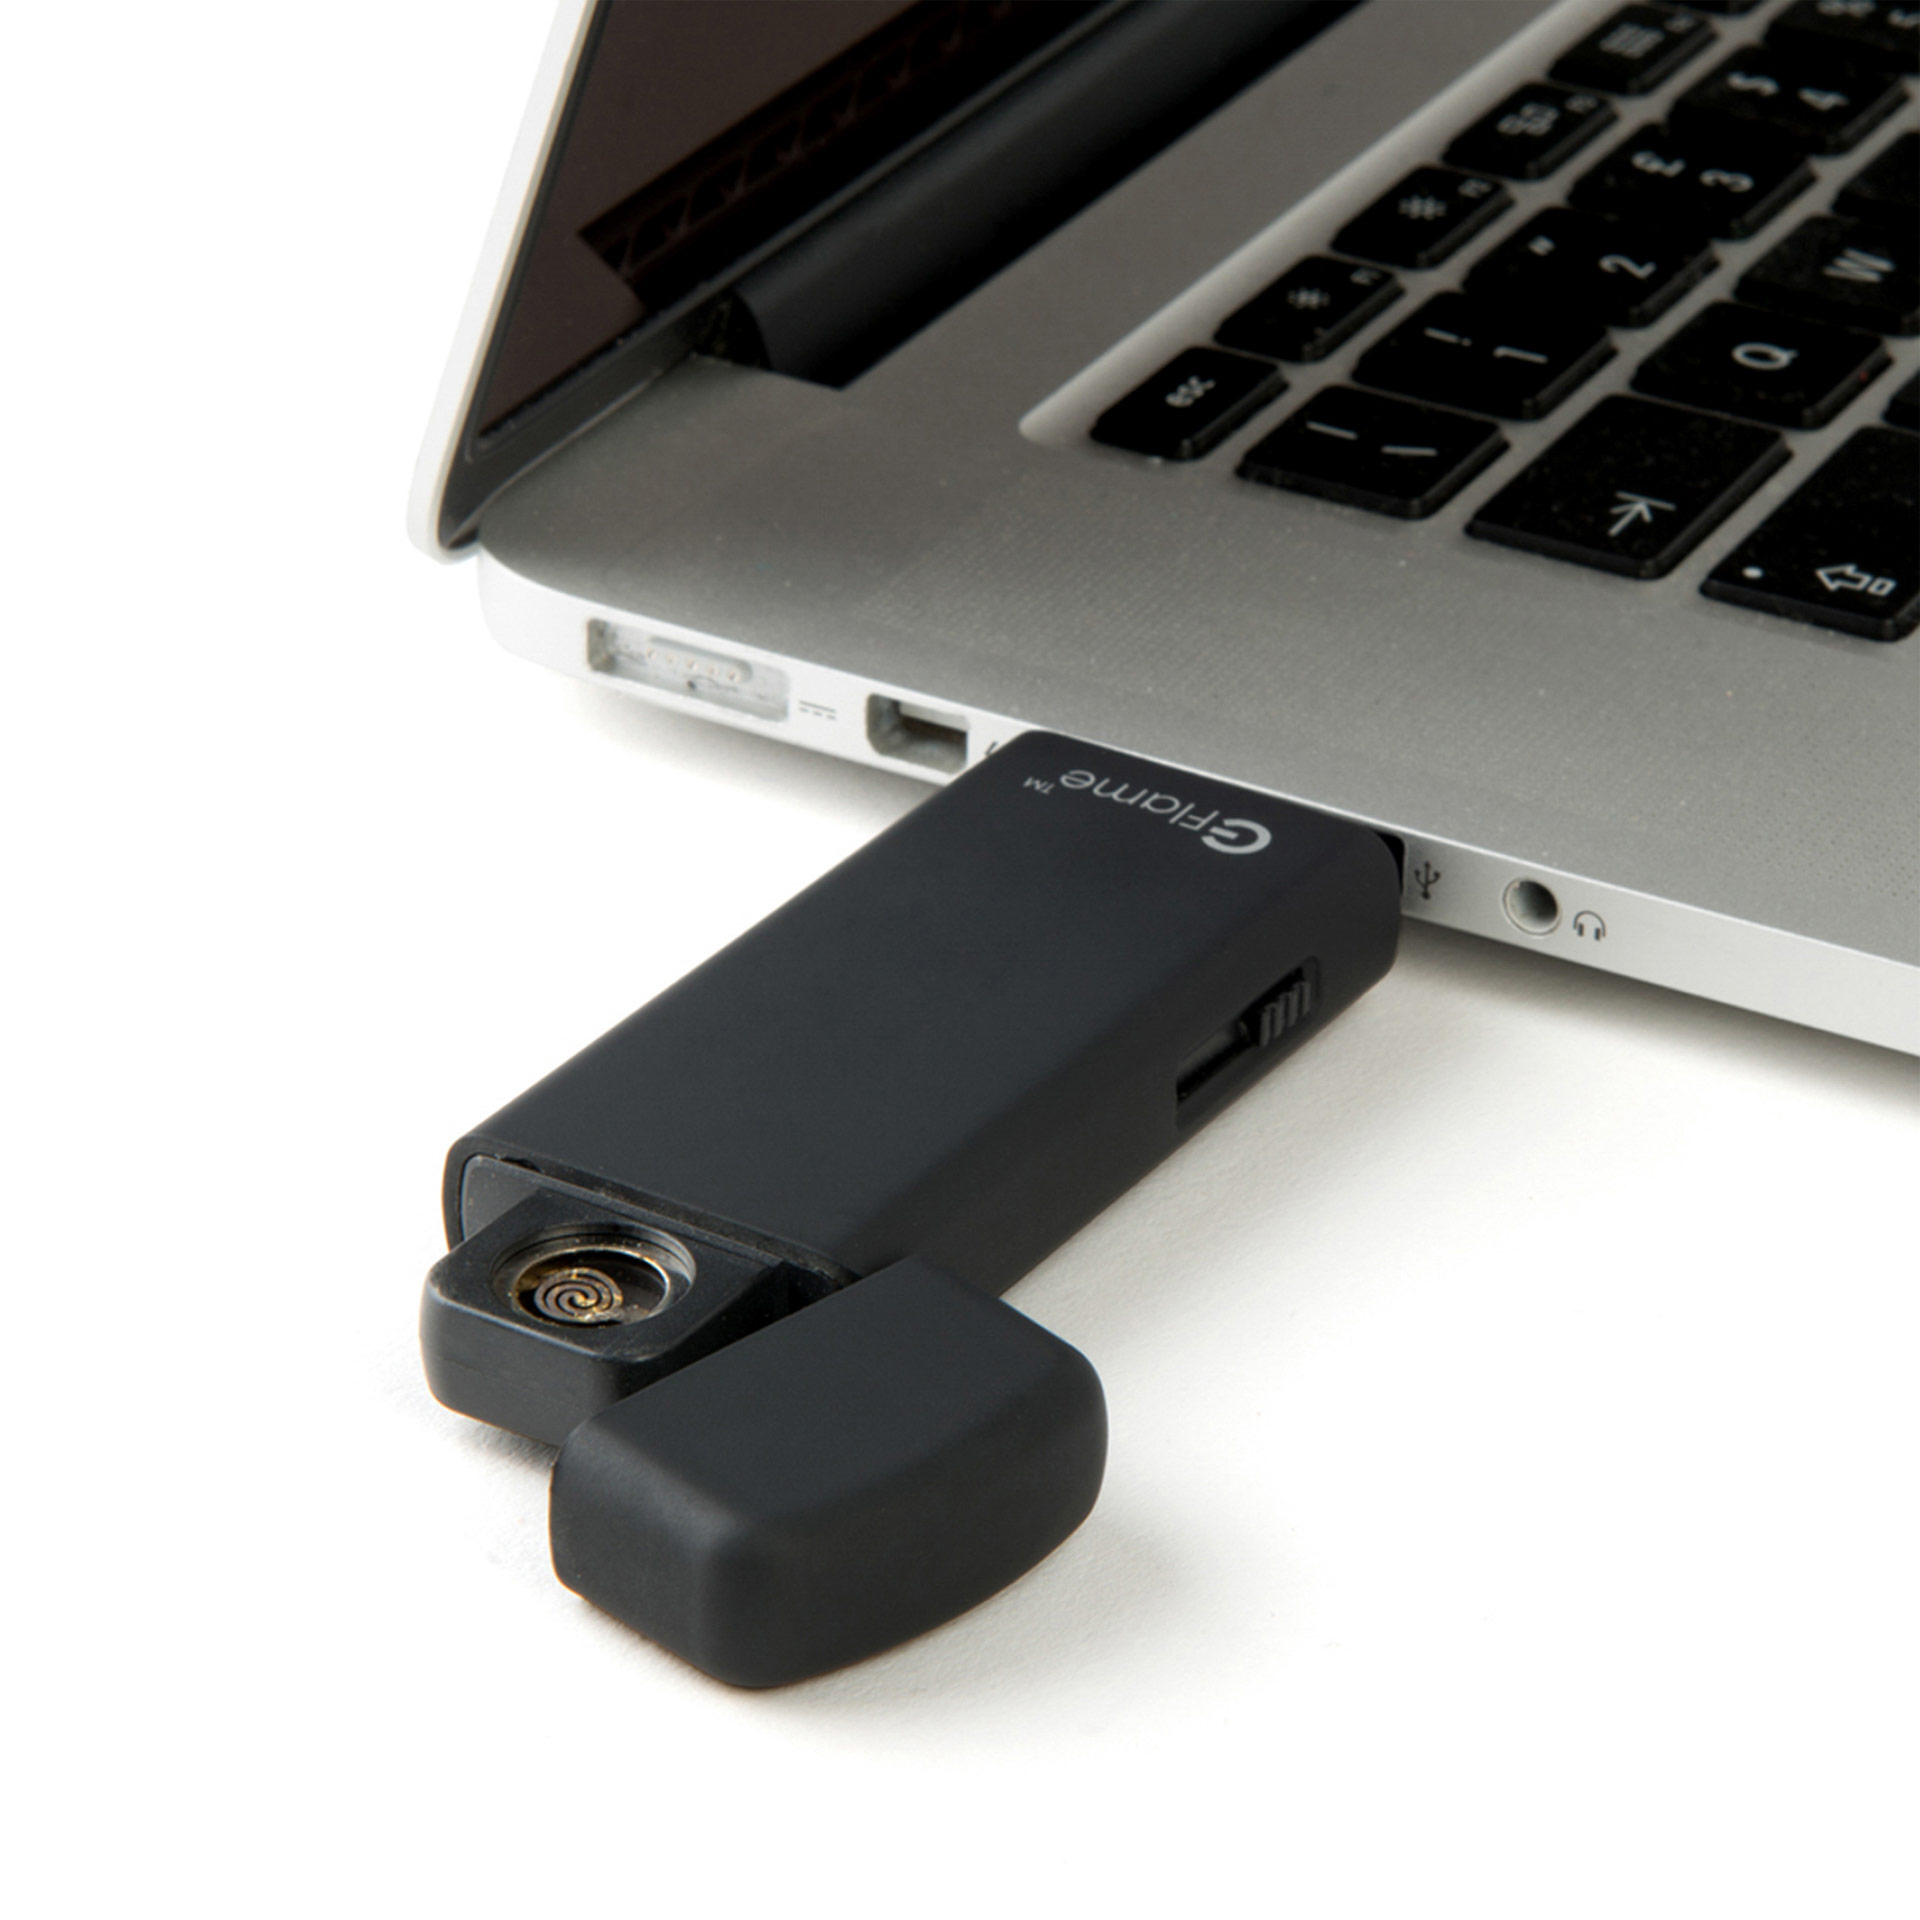 Accendini USB ricaricabili: tempo di ricarica e durata della carica